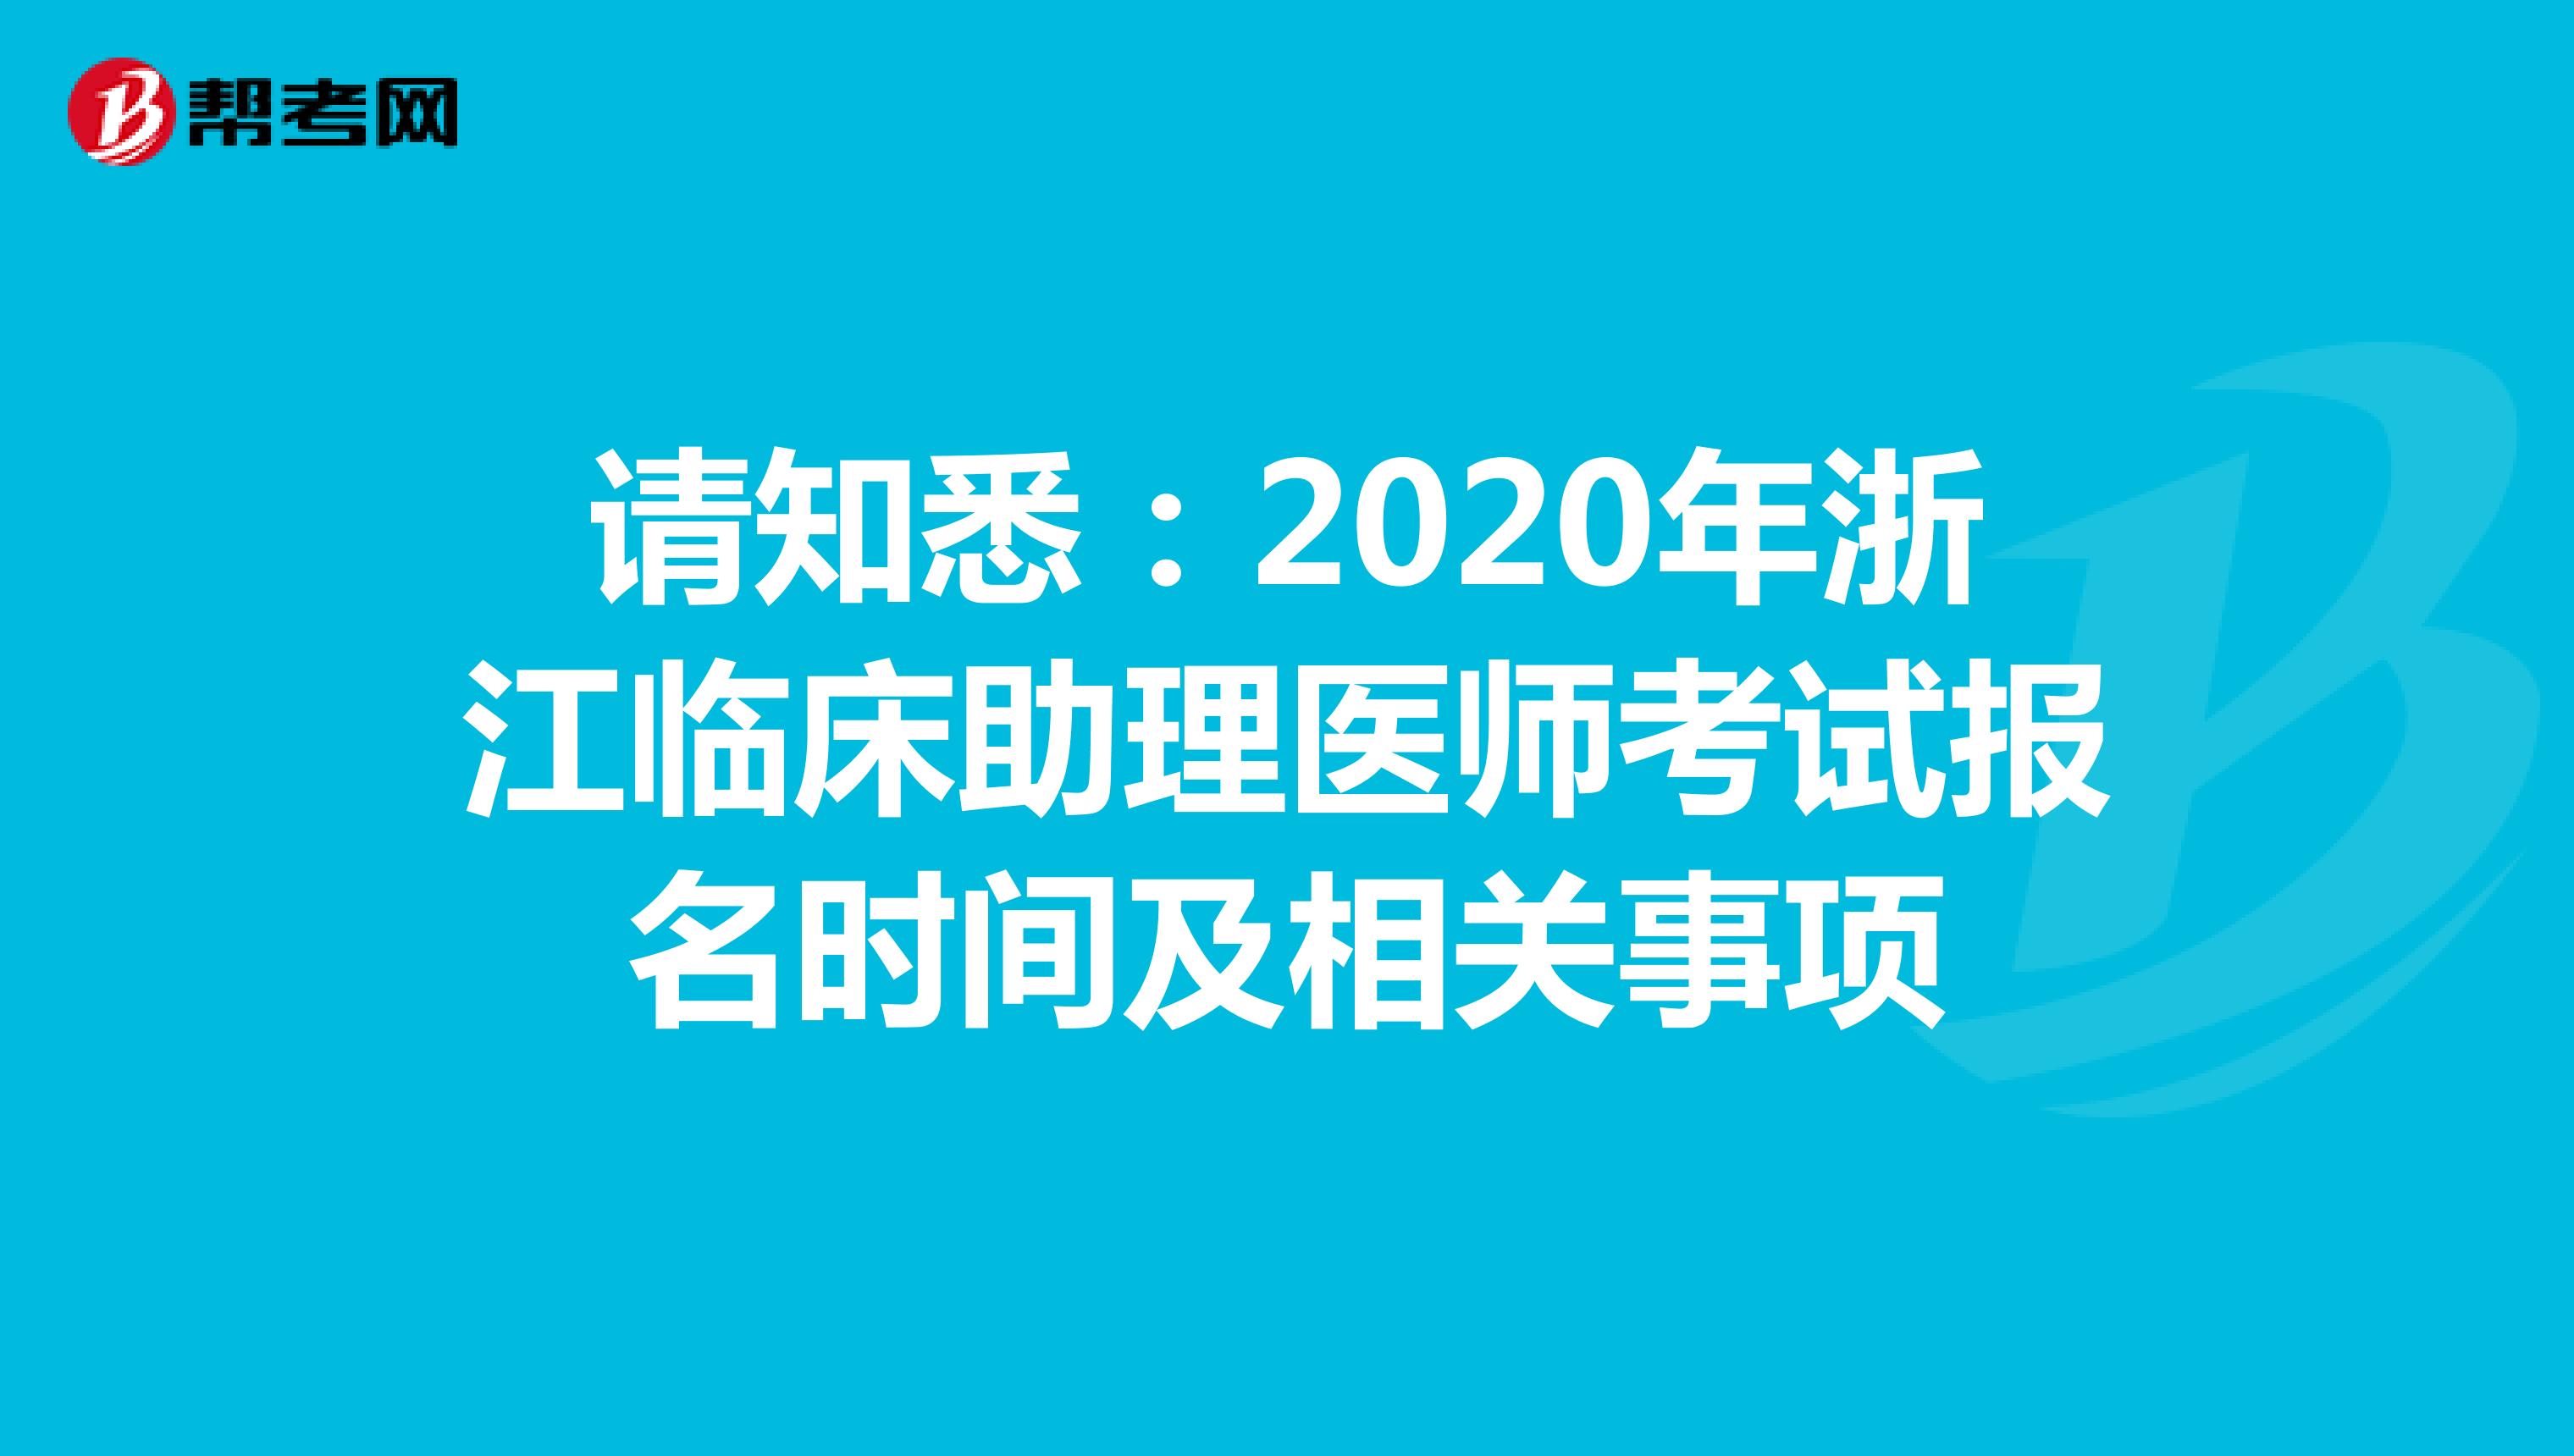 请知悉：2021年浙江临床助理医师考试报名时间及相关事项